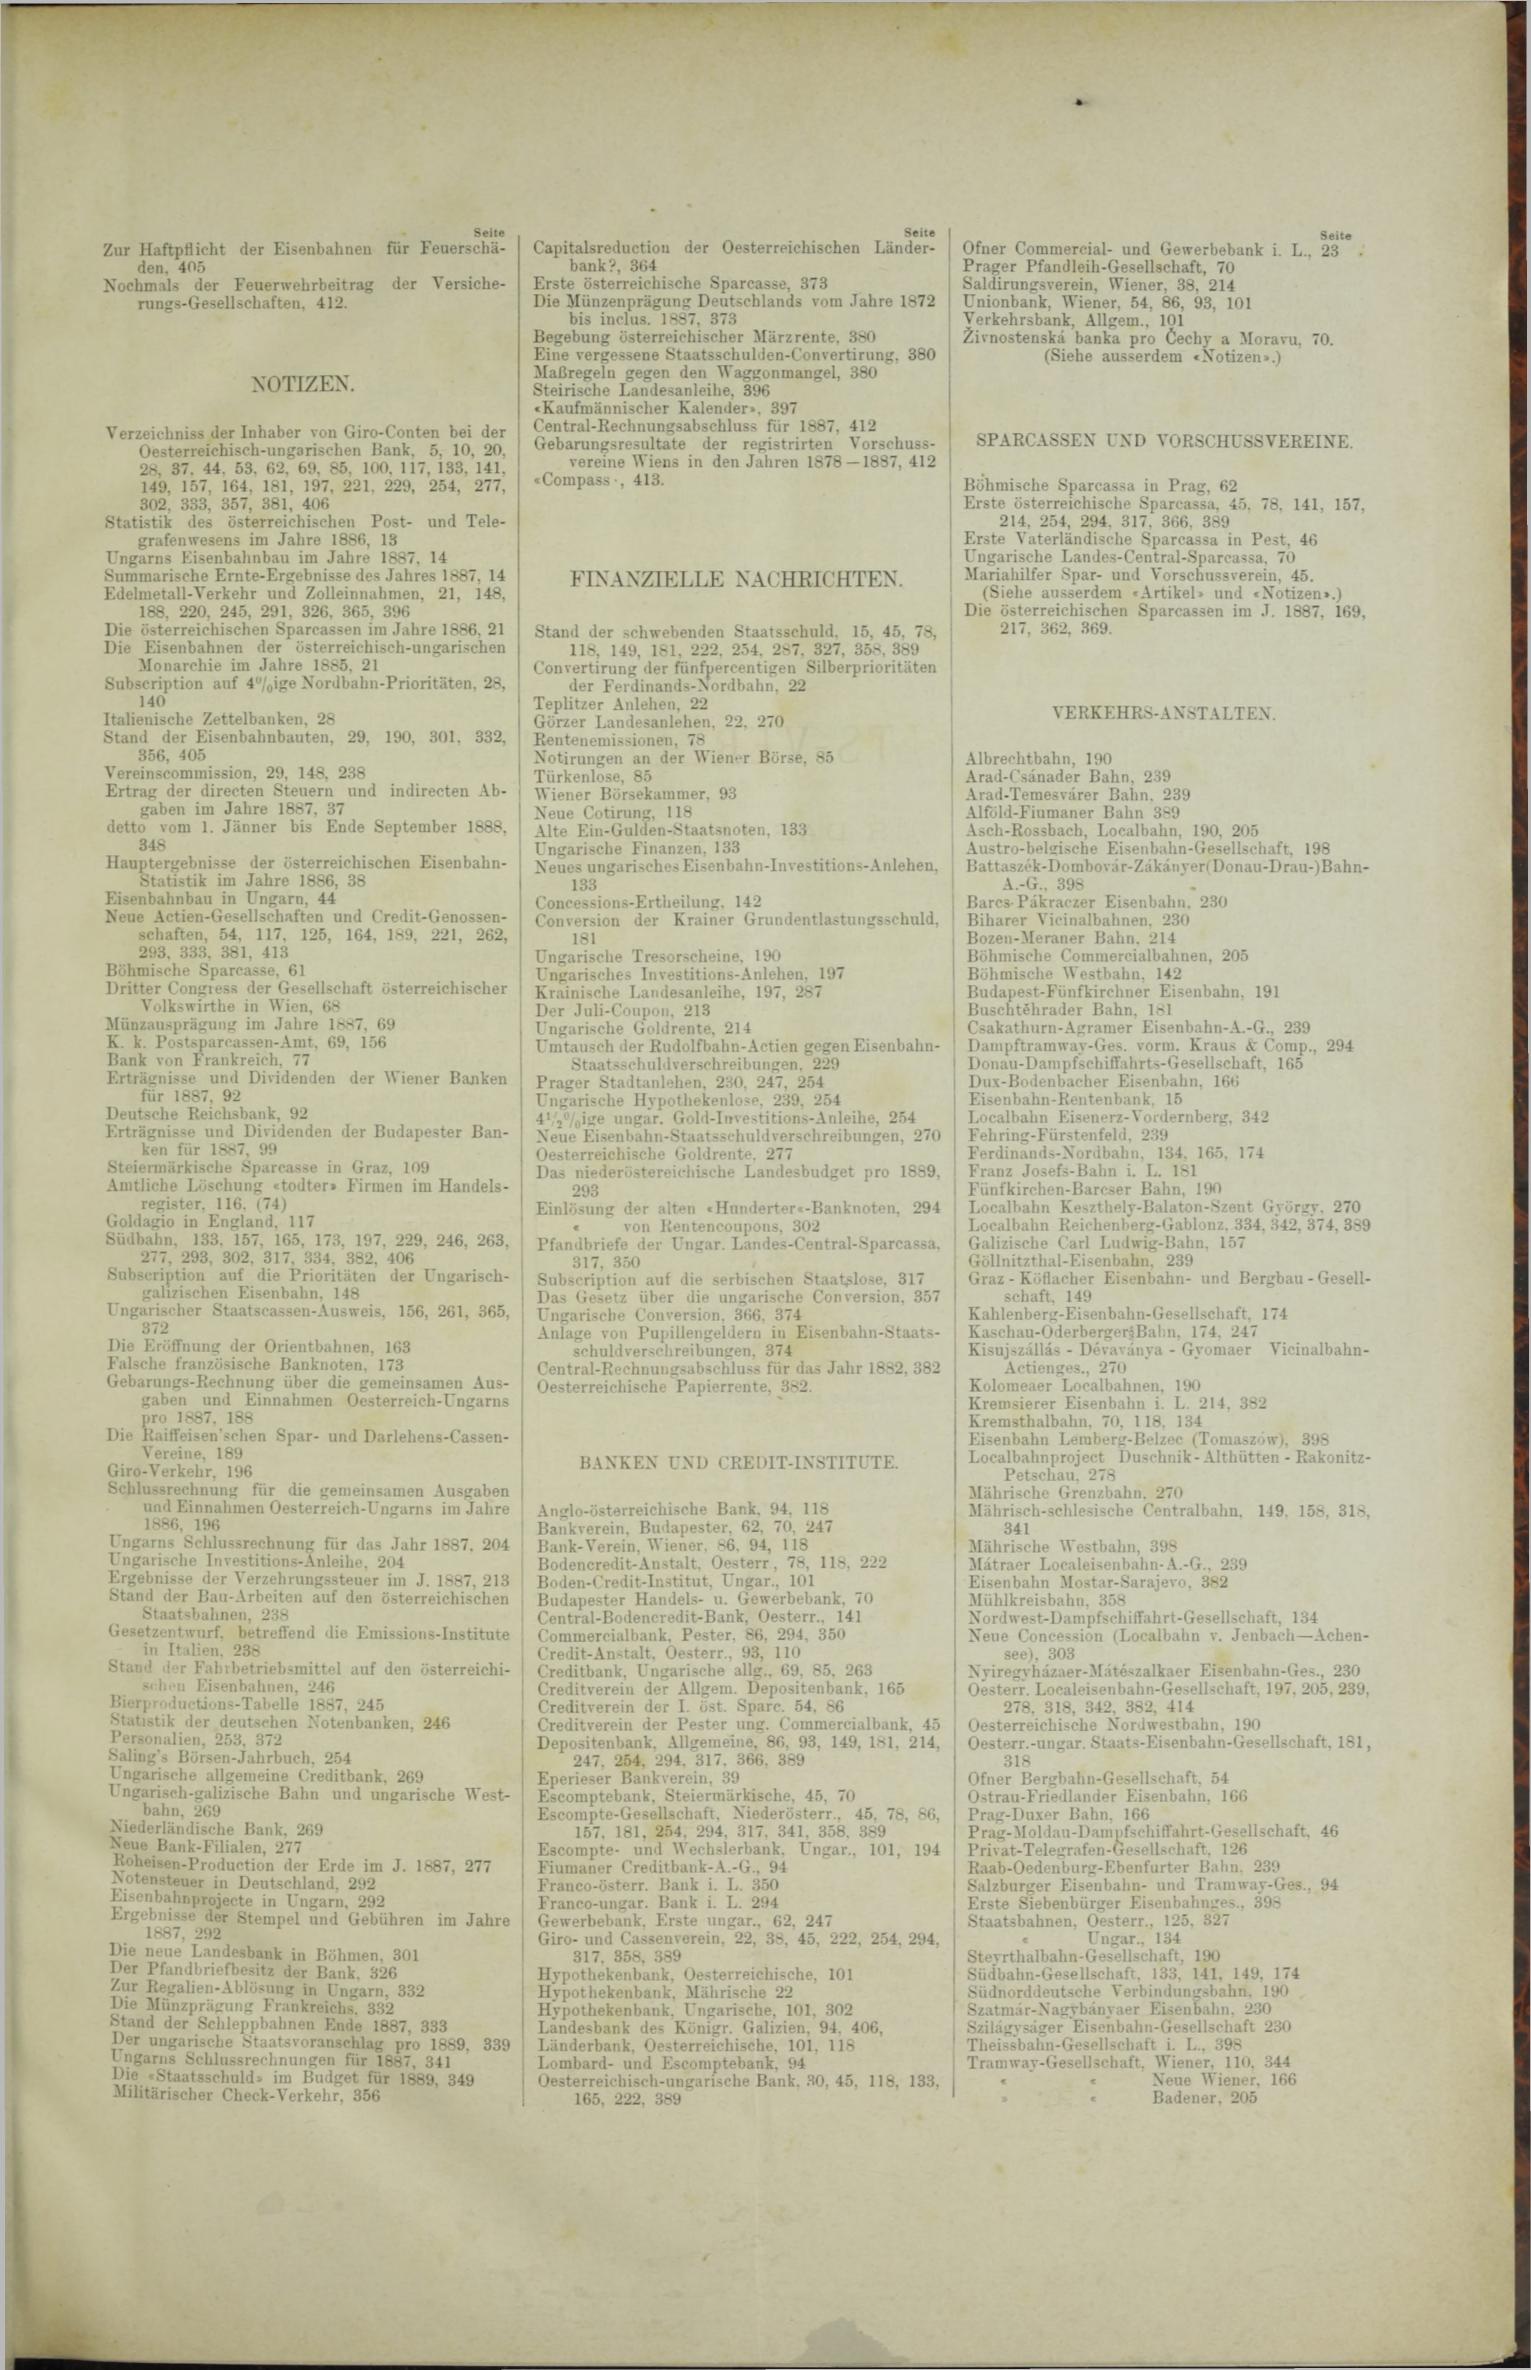 Der Tresor 14.06.1888 - Seite 11